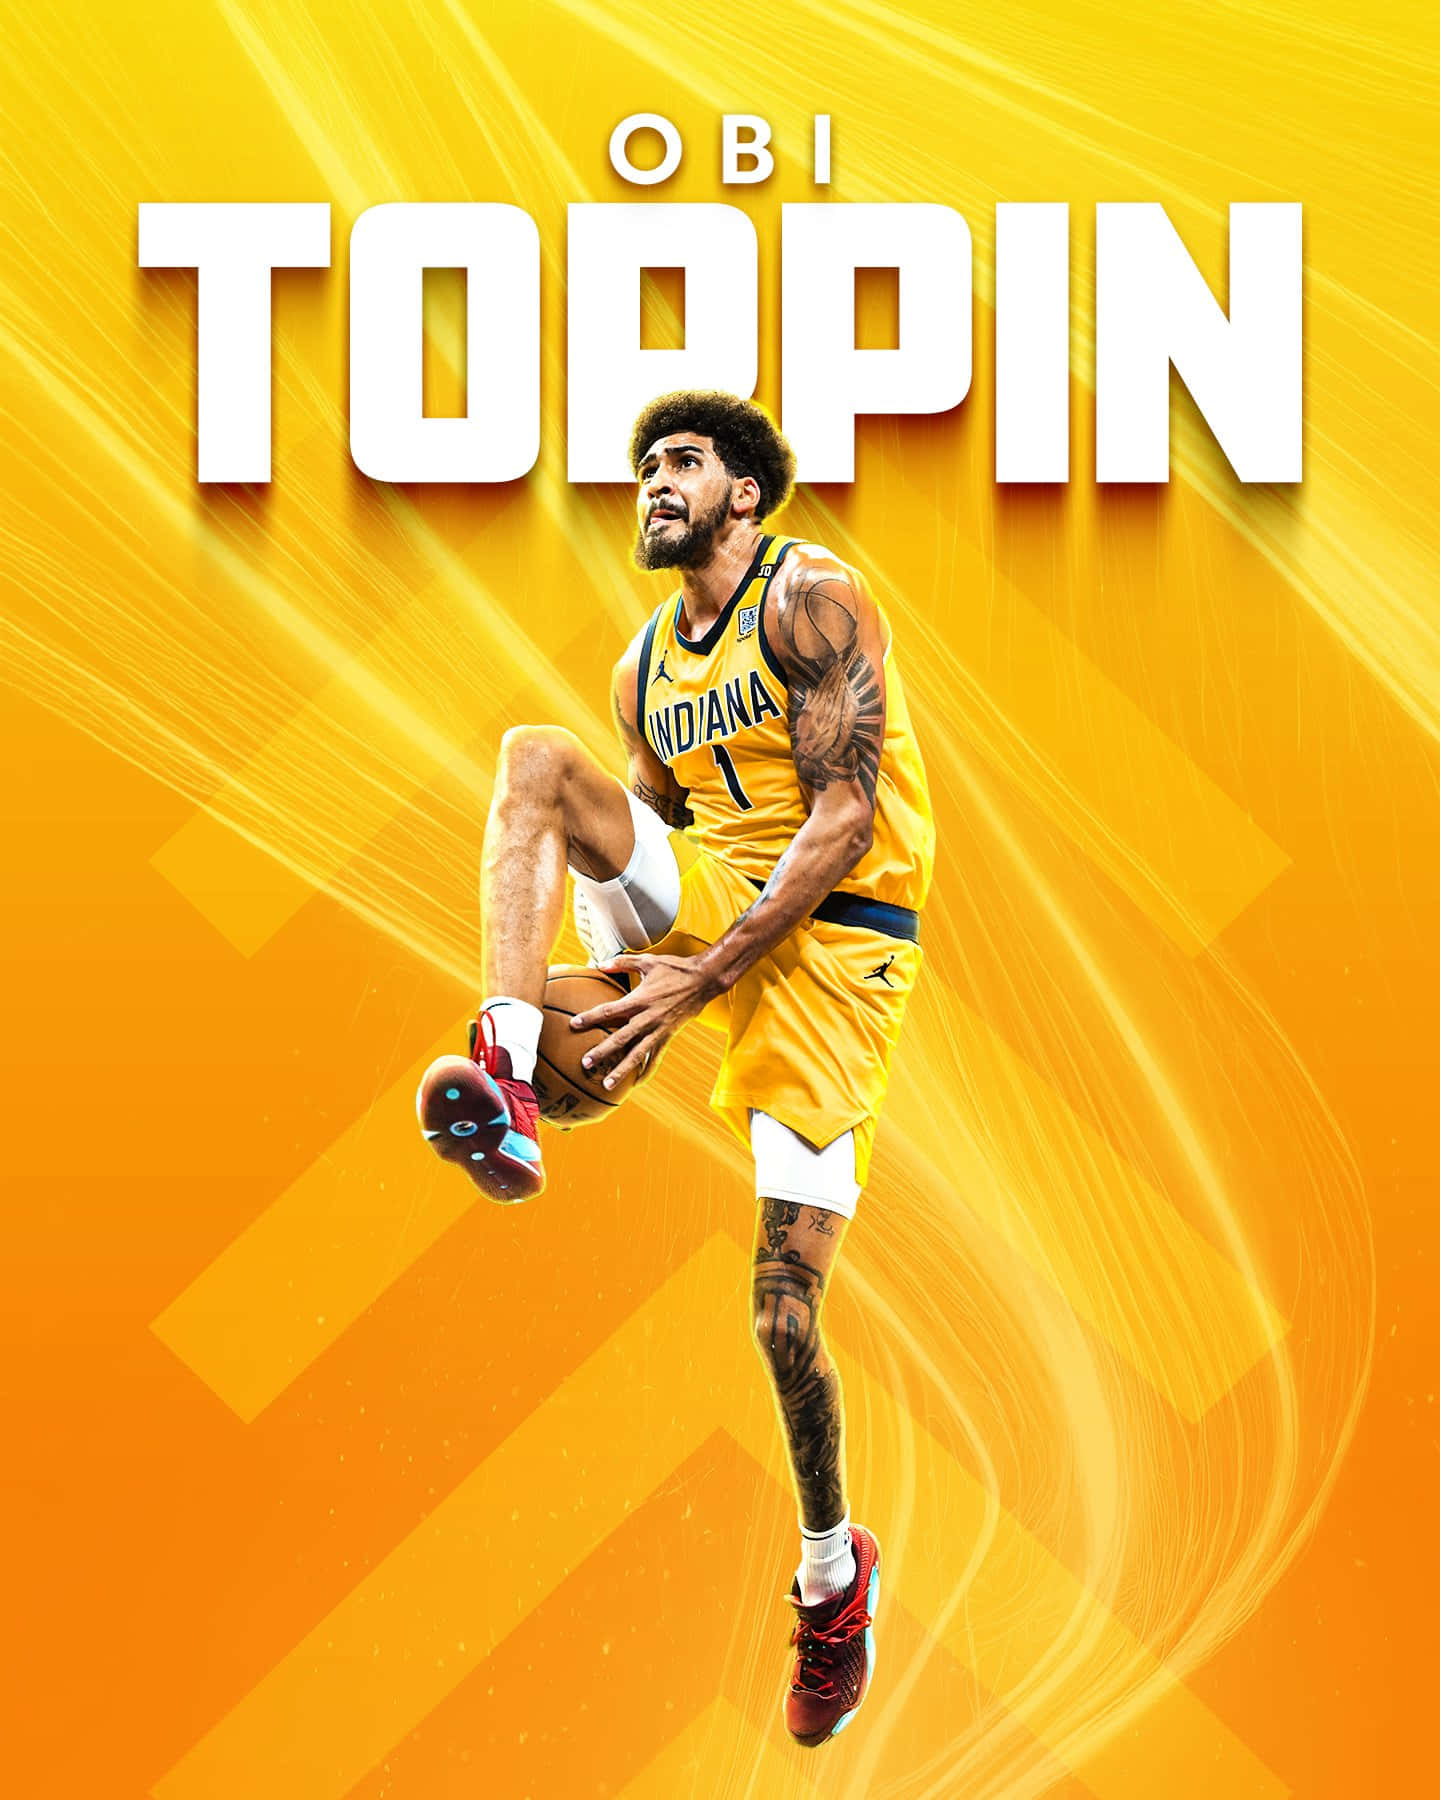 Obi Toppin Basketball Artwork Wallpaper